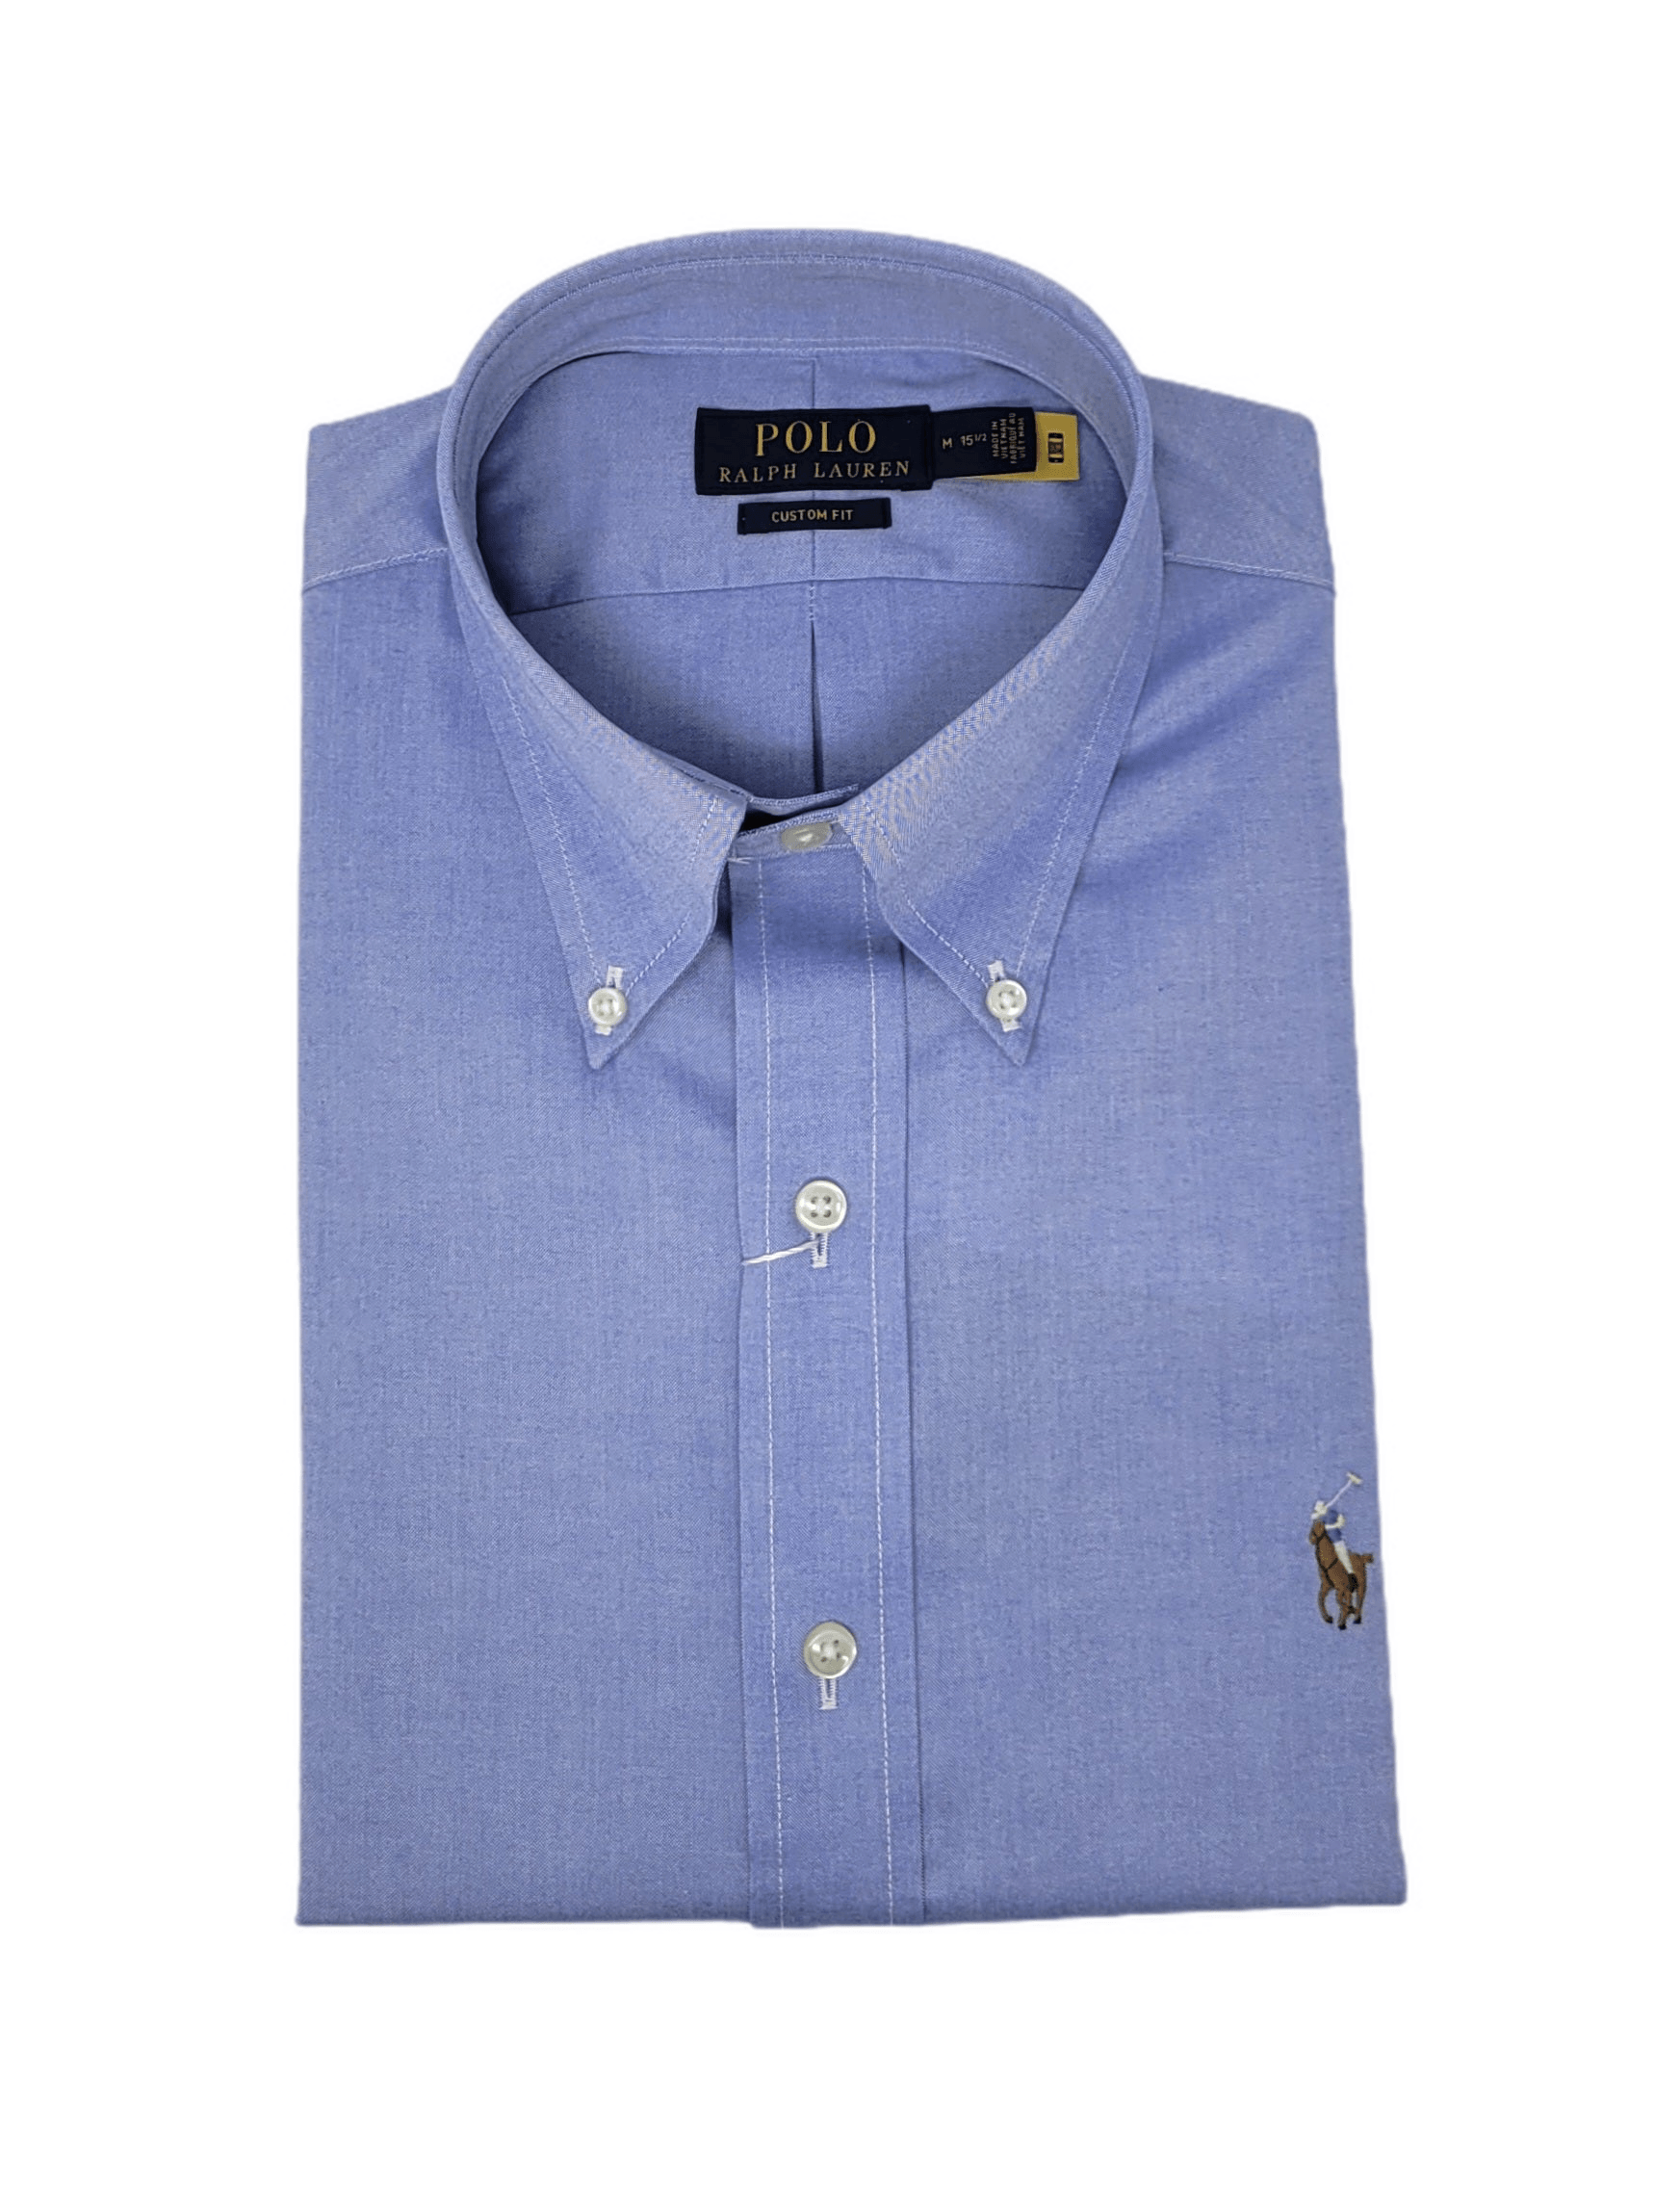 Polo Ralph Lauren Polo - La chemise de rugby emblématique (Bleu